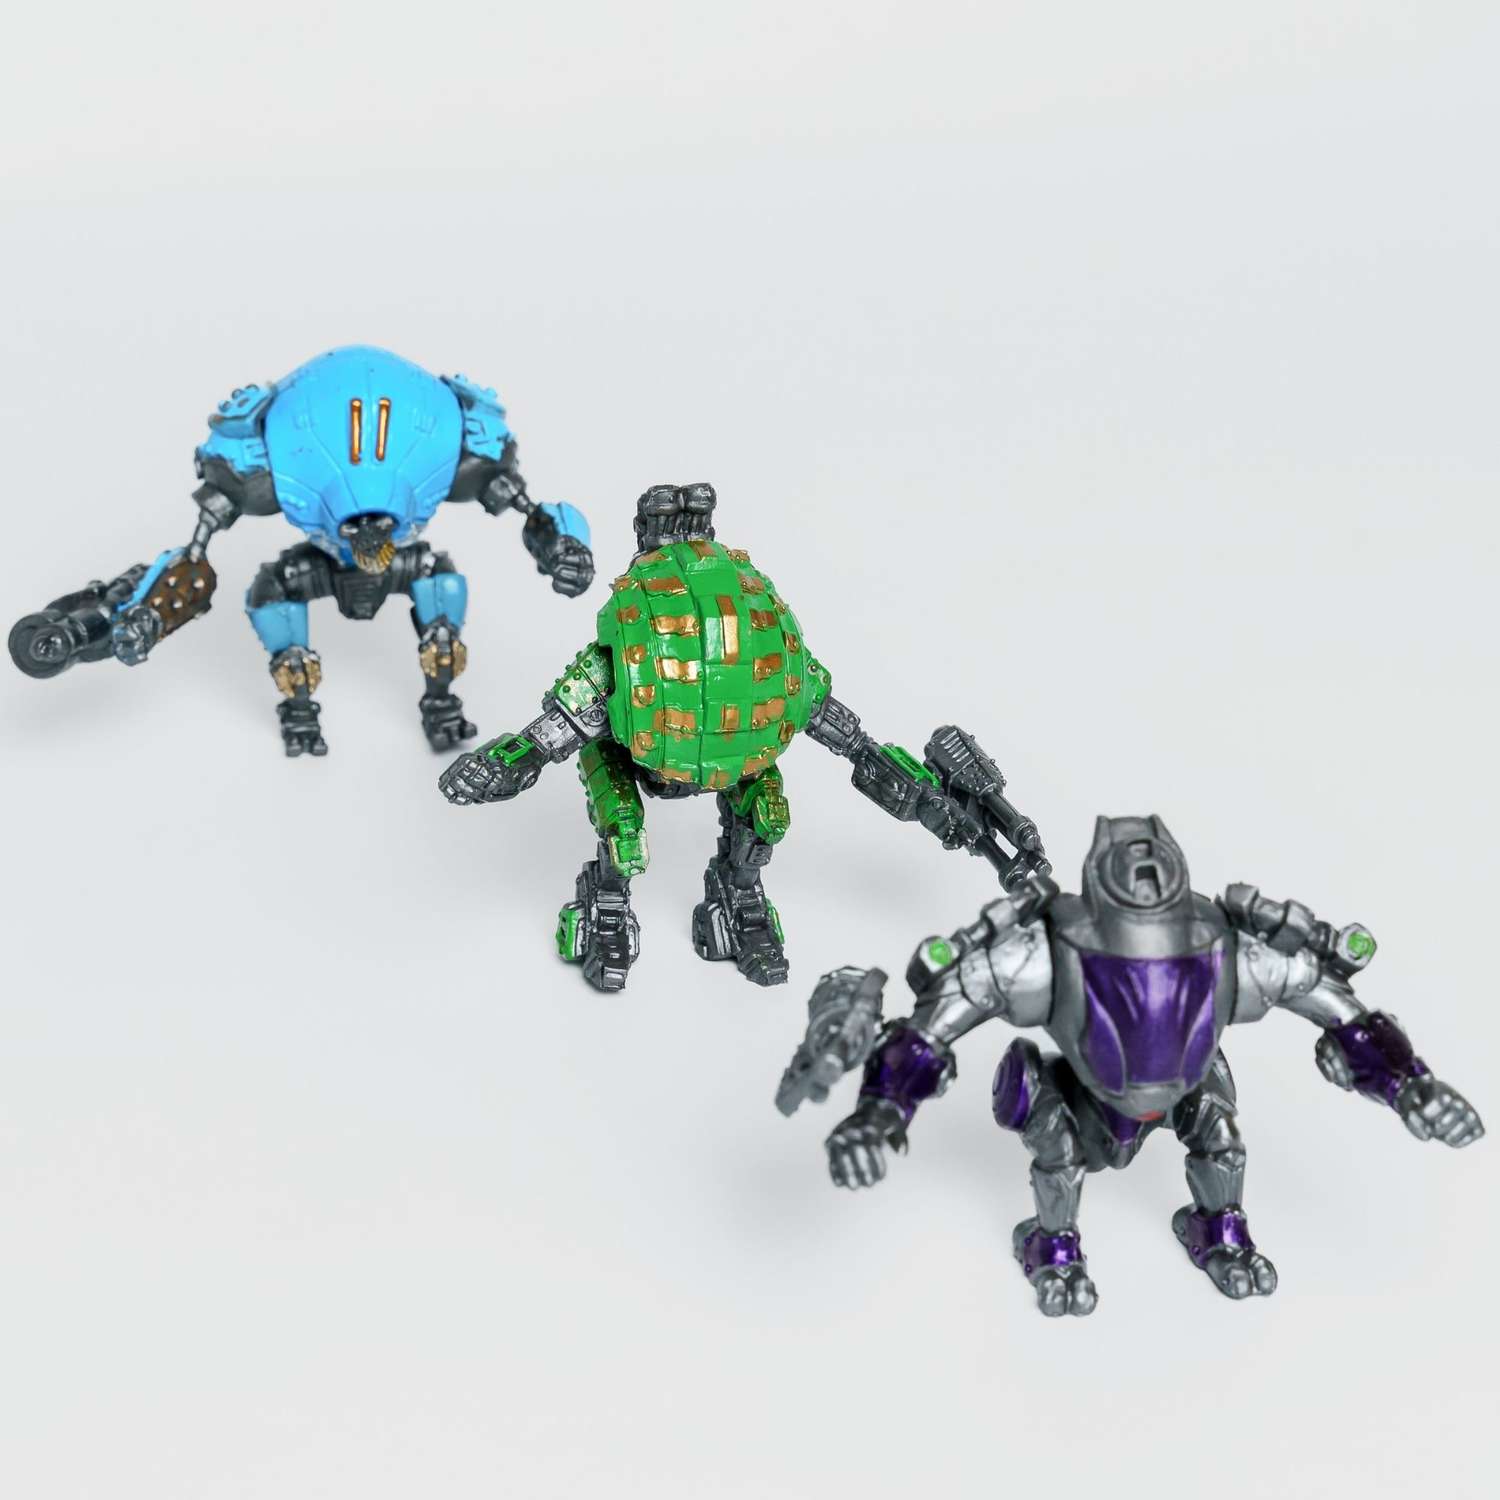 Роботы CyberCode 3 фигурки игрушки для детей развивающие пластиковые коллекционные интересные. 8см - фото 7